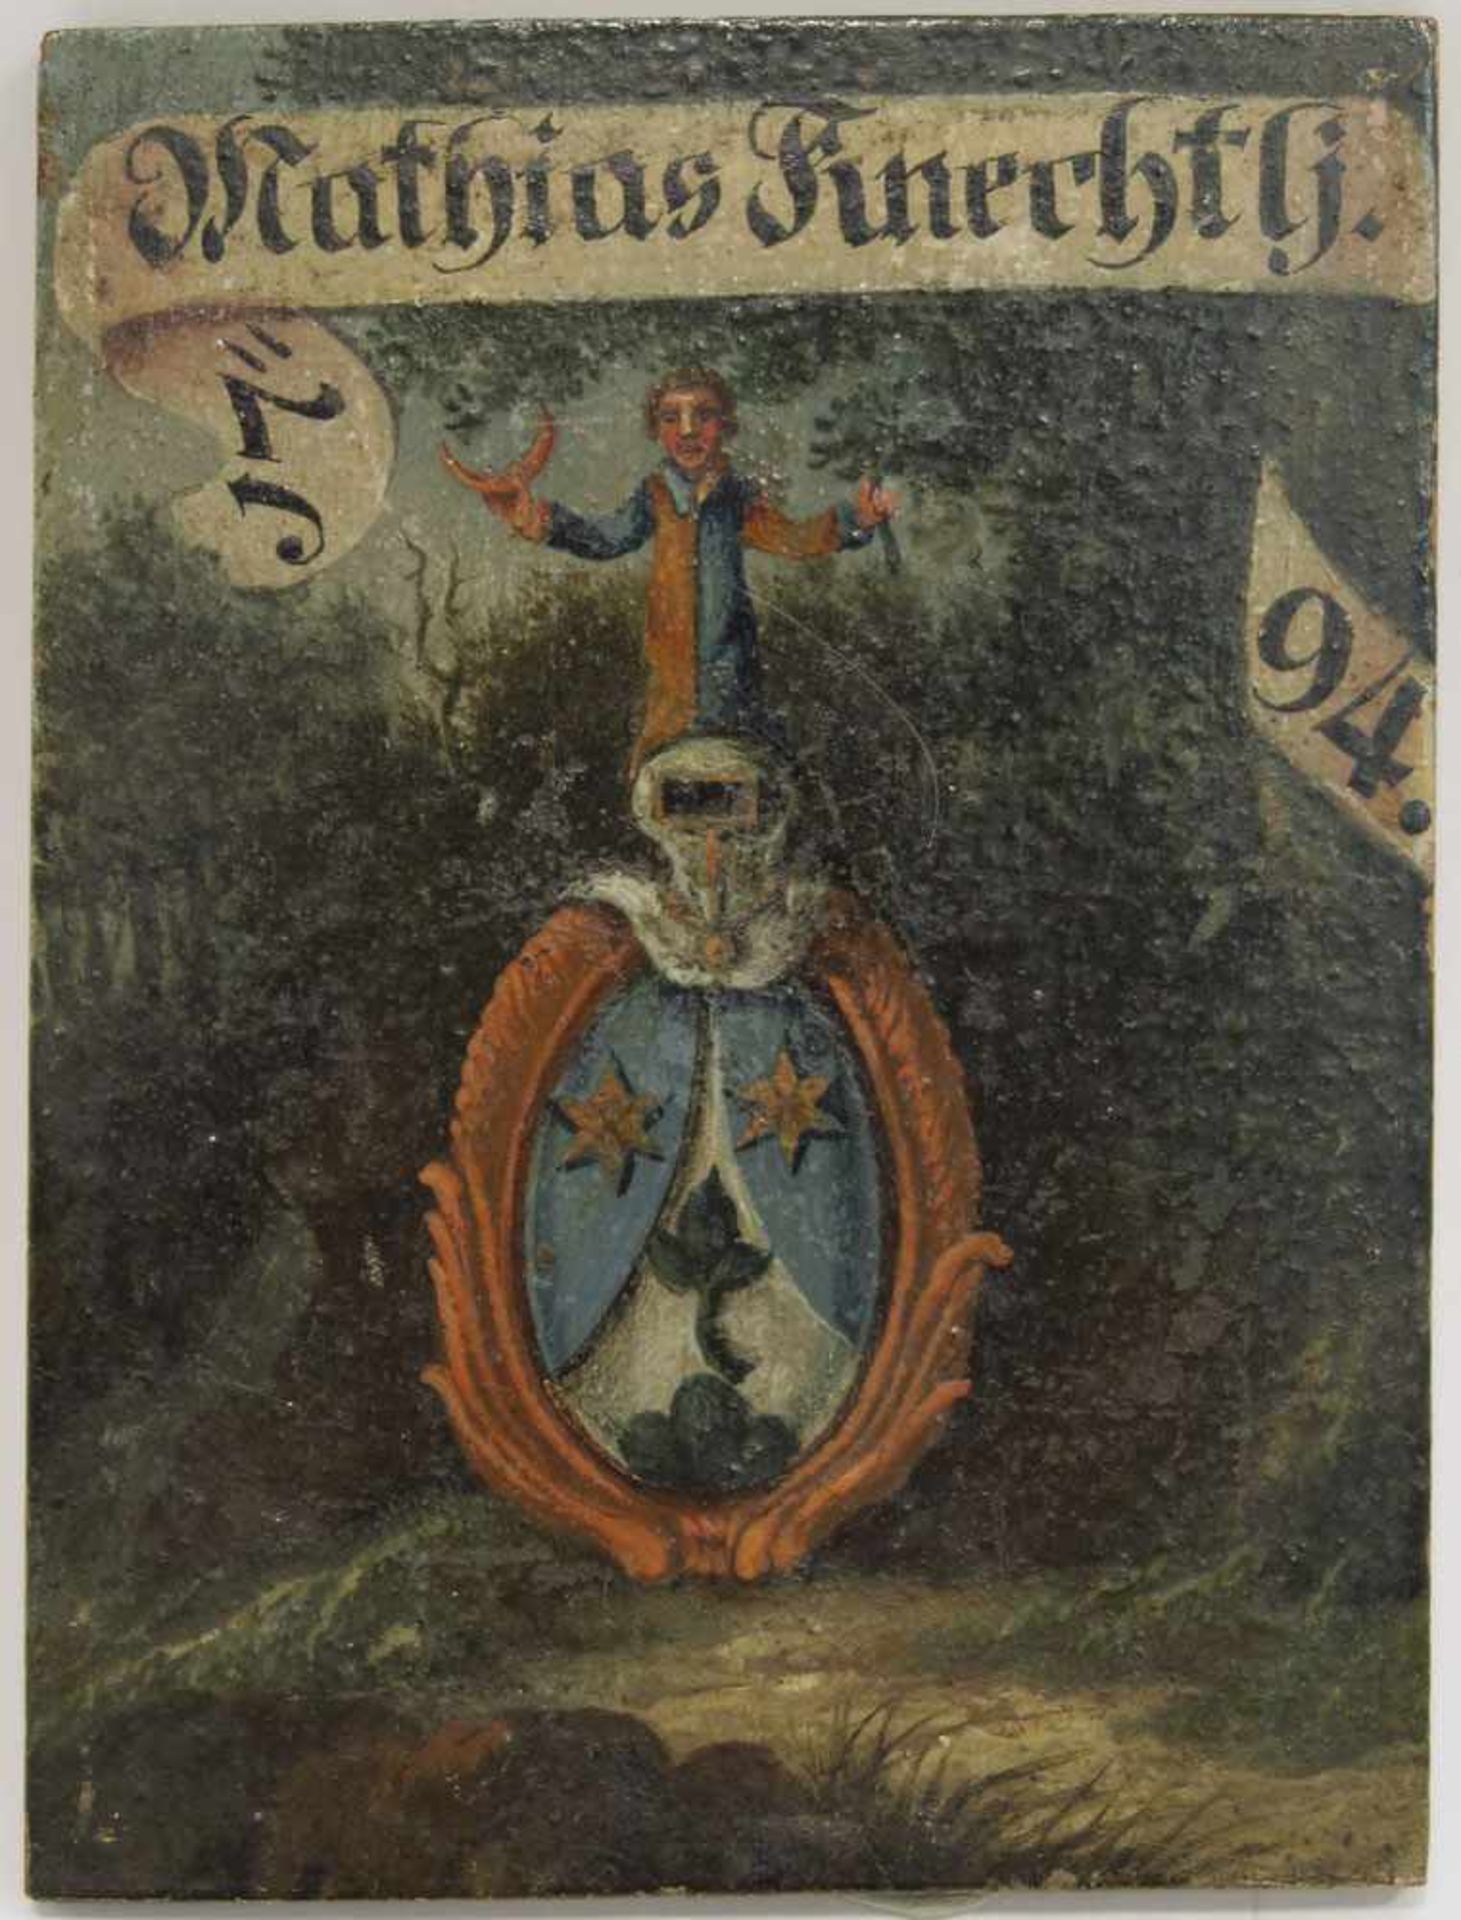 Kleines Wappenbild Öl/Lwd. 10 x 7,5 cm. Bez. "Mathias Knechtlj." und datiert "1794".